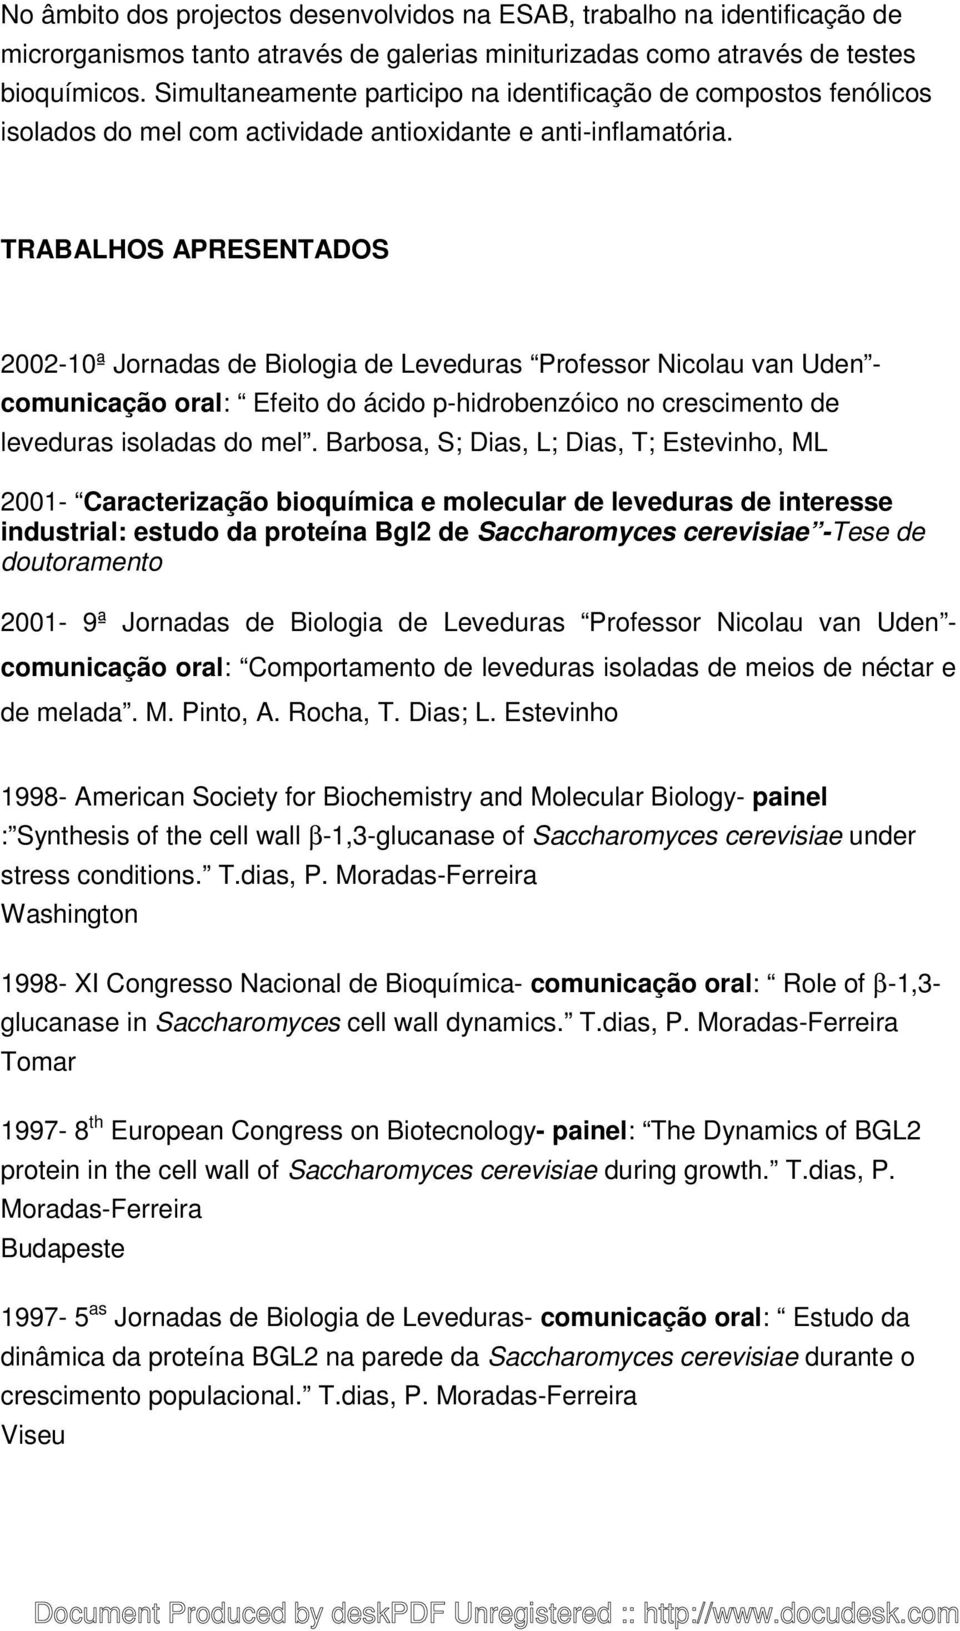 TRABALHOS APRESENTADOS 2002-10ª Jornadas de Biologia de Leveduras Professor Nicolau van Uden - comunicação oral: Efeito do ácido p-hidrobenzóico no crescimento de leveduras isoladas do mel.